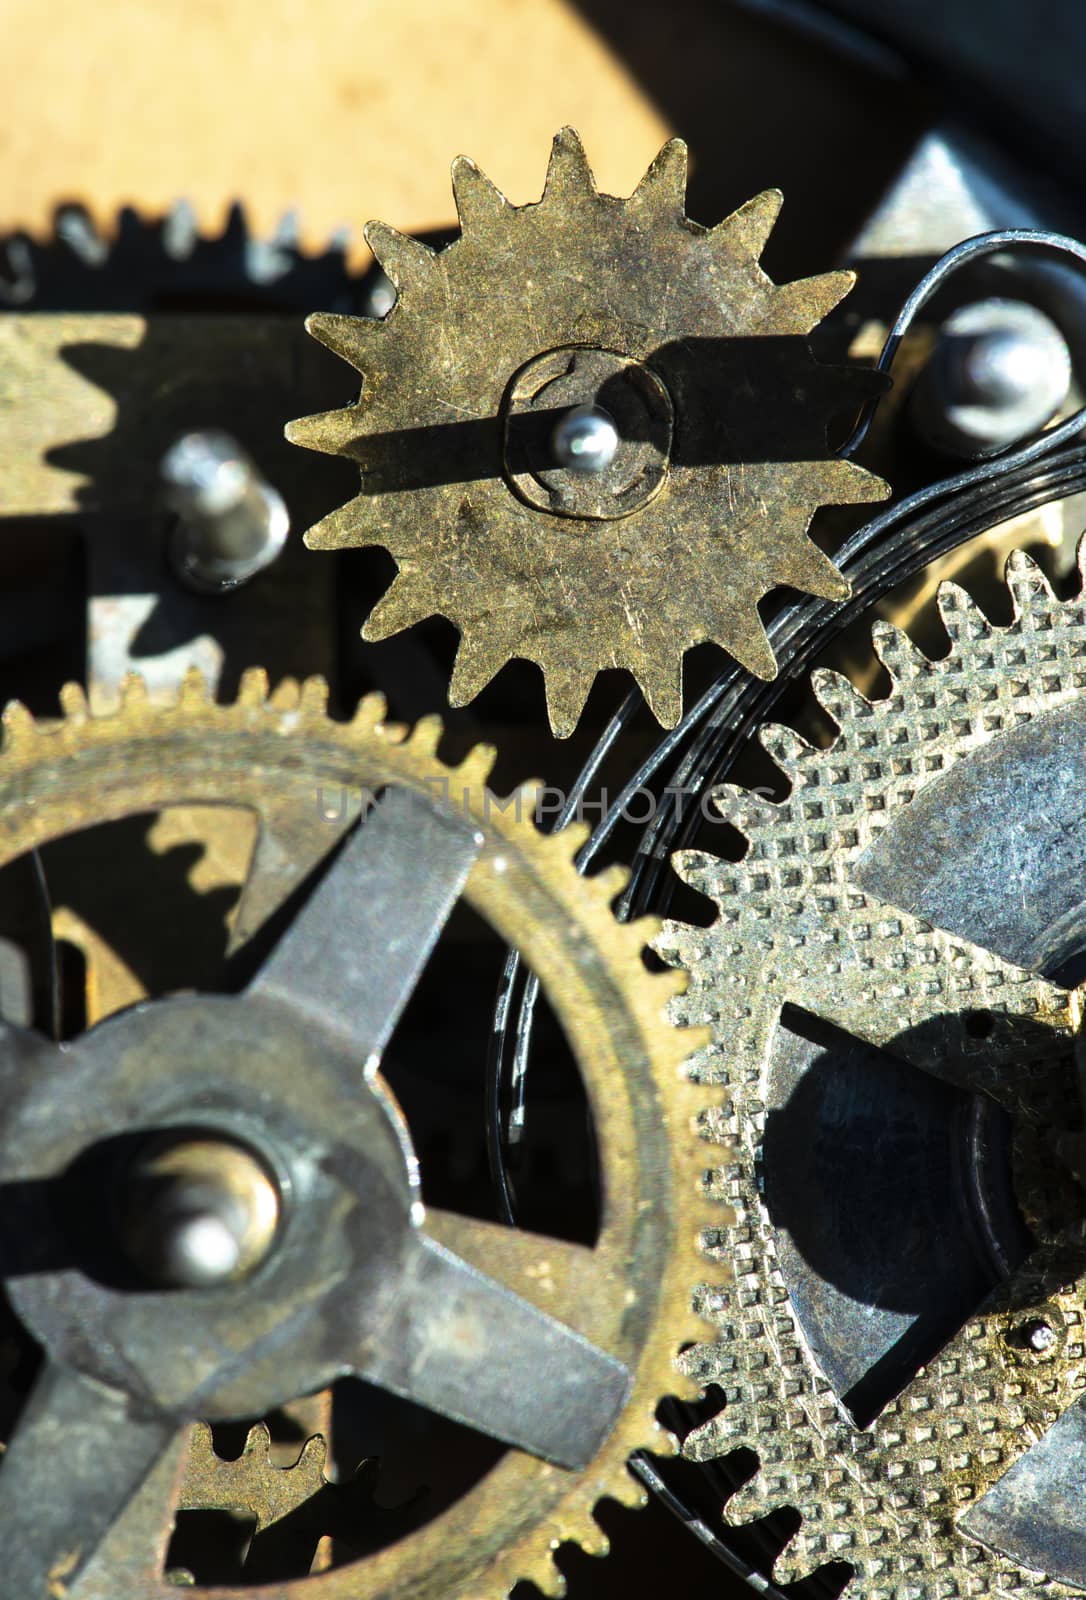 Close up metal gears mechanism. Golden colours. Hard light. Clock interior mechanism parts.